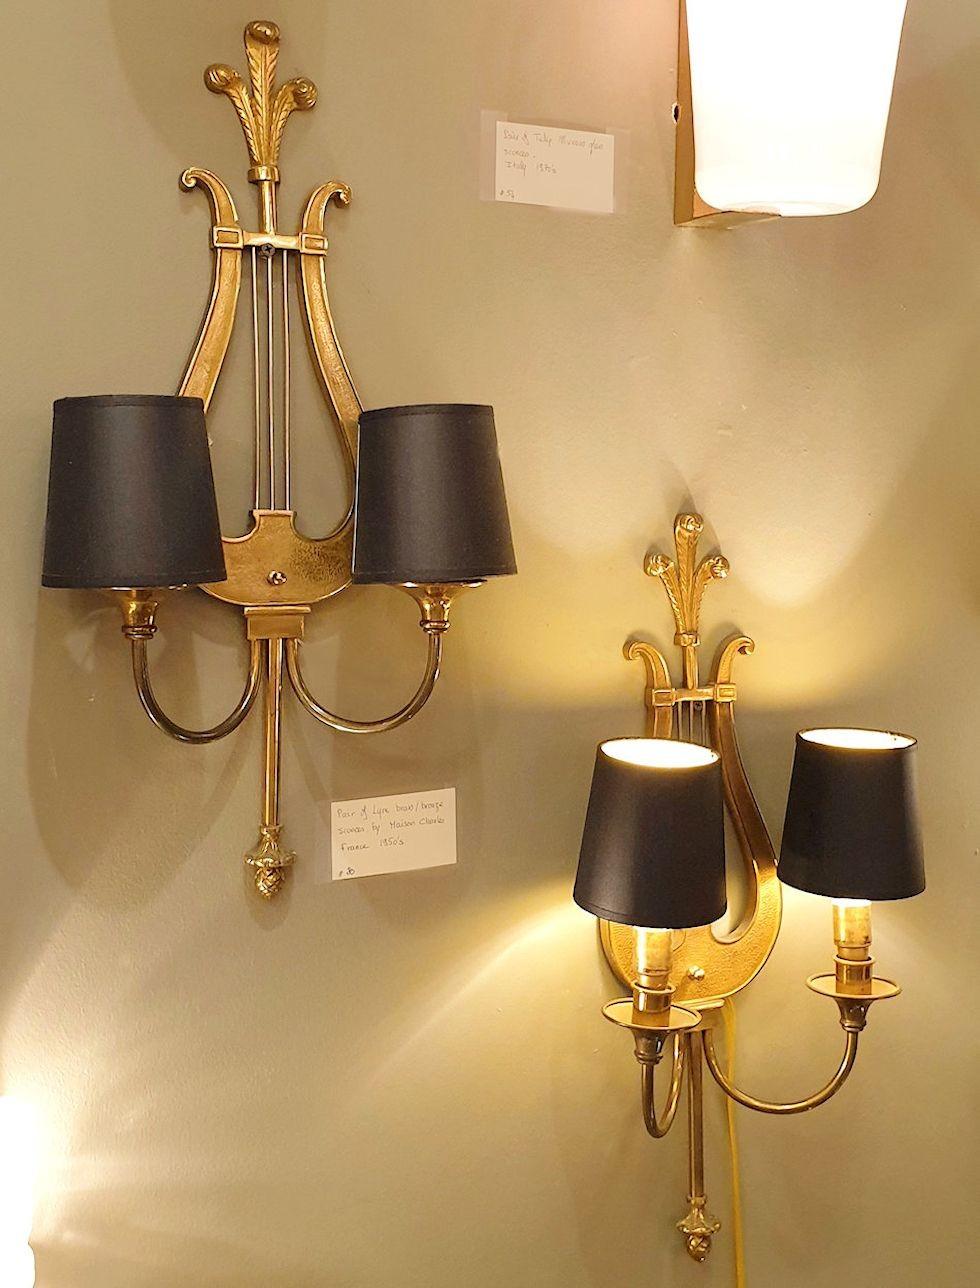 Ein Paar Leier-Leuchter im neoklassischen Stil, Maison Charles, Frankreich 1950er Jahre.
Das Paar Wandleuchter ist aus Bronze gefertigt und hat jeweils 2 Leuchten.
Jede Glühbirne ist mit einem kleinen schwarzen Schirm versehen. Die Schirme können